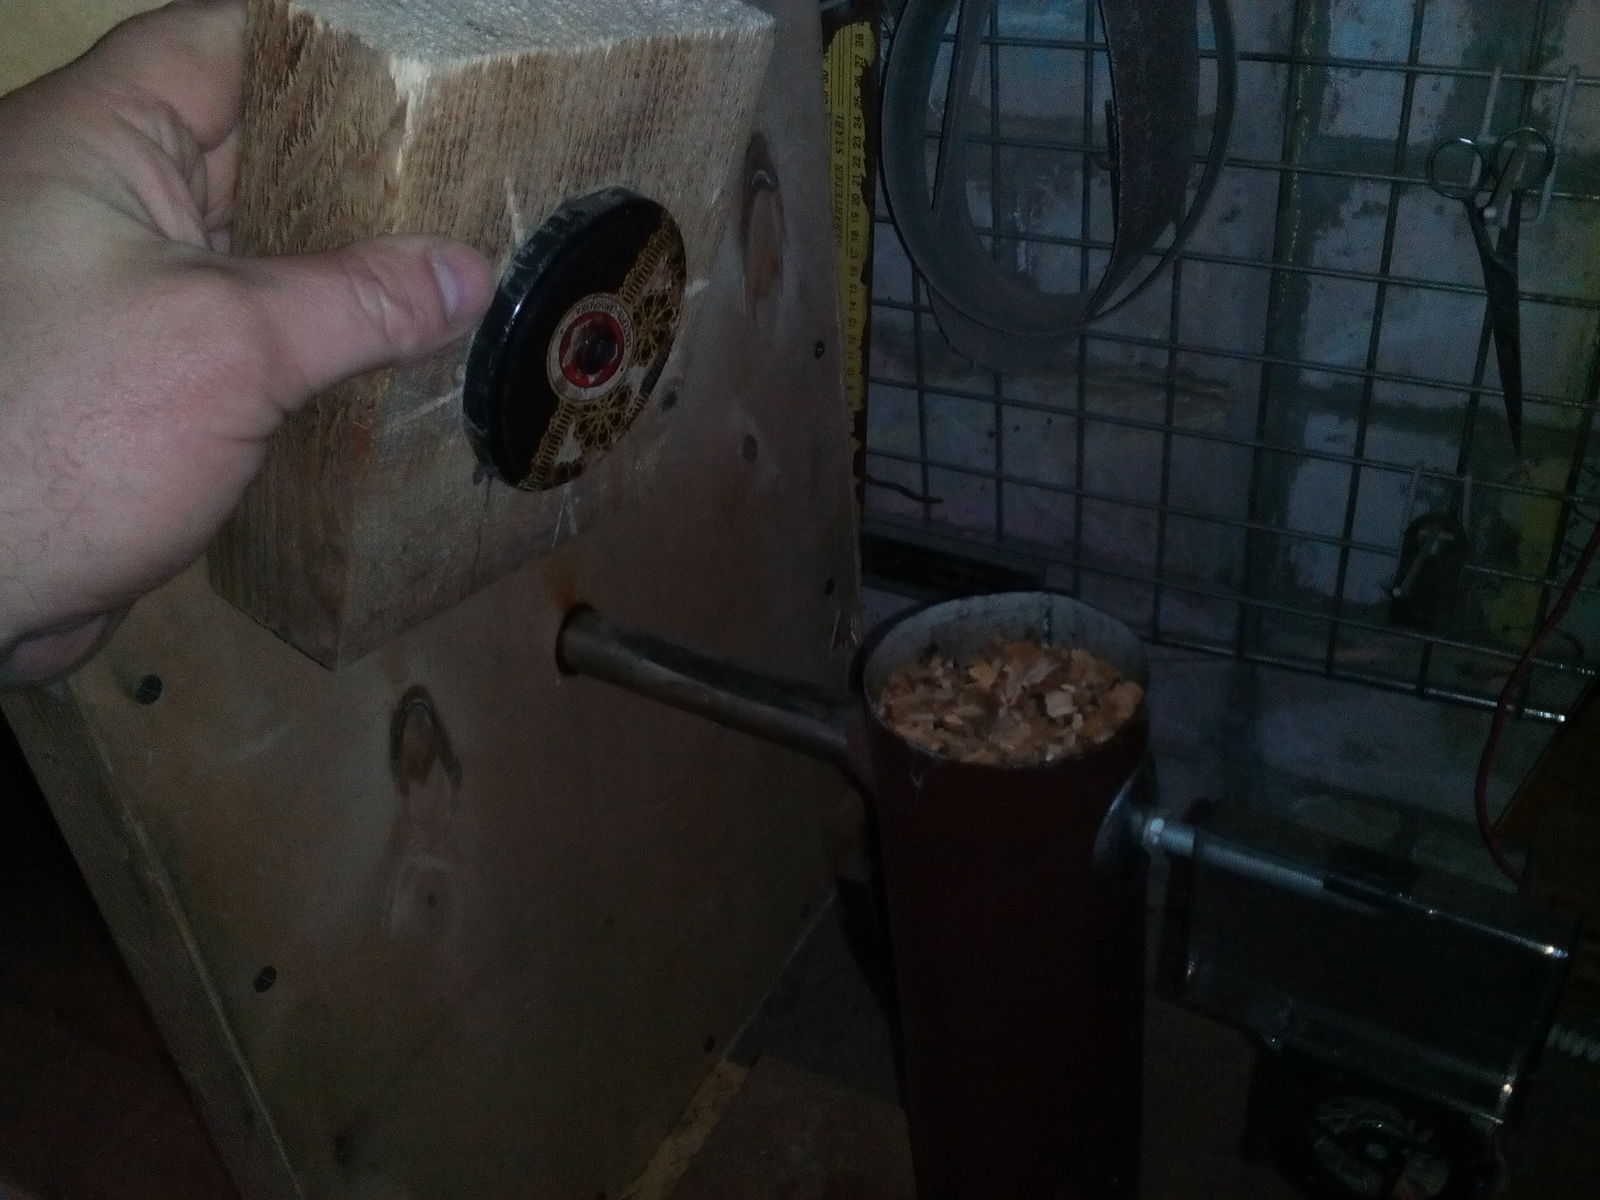 коптильный шкаф своими руками из дерева с терморегулятором